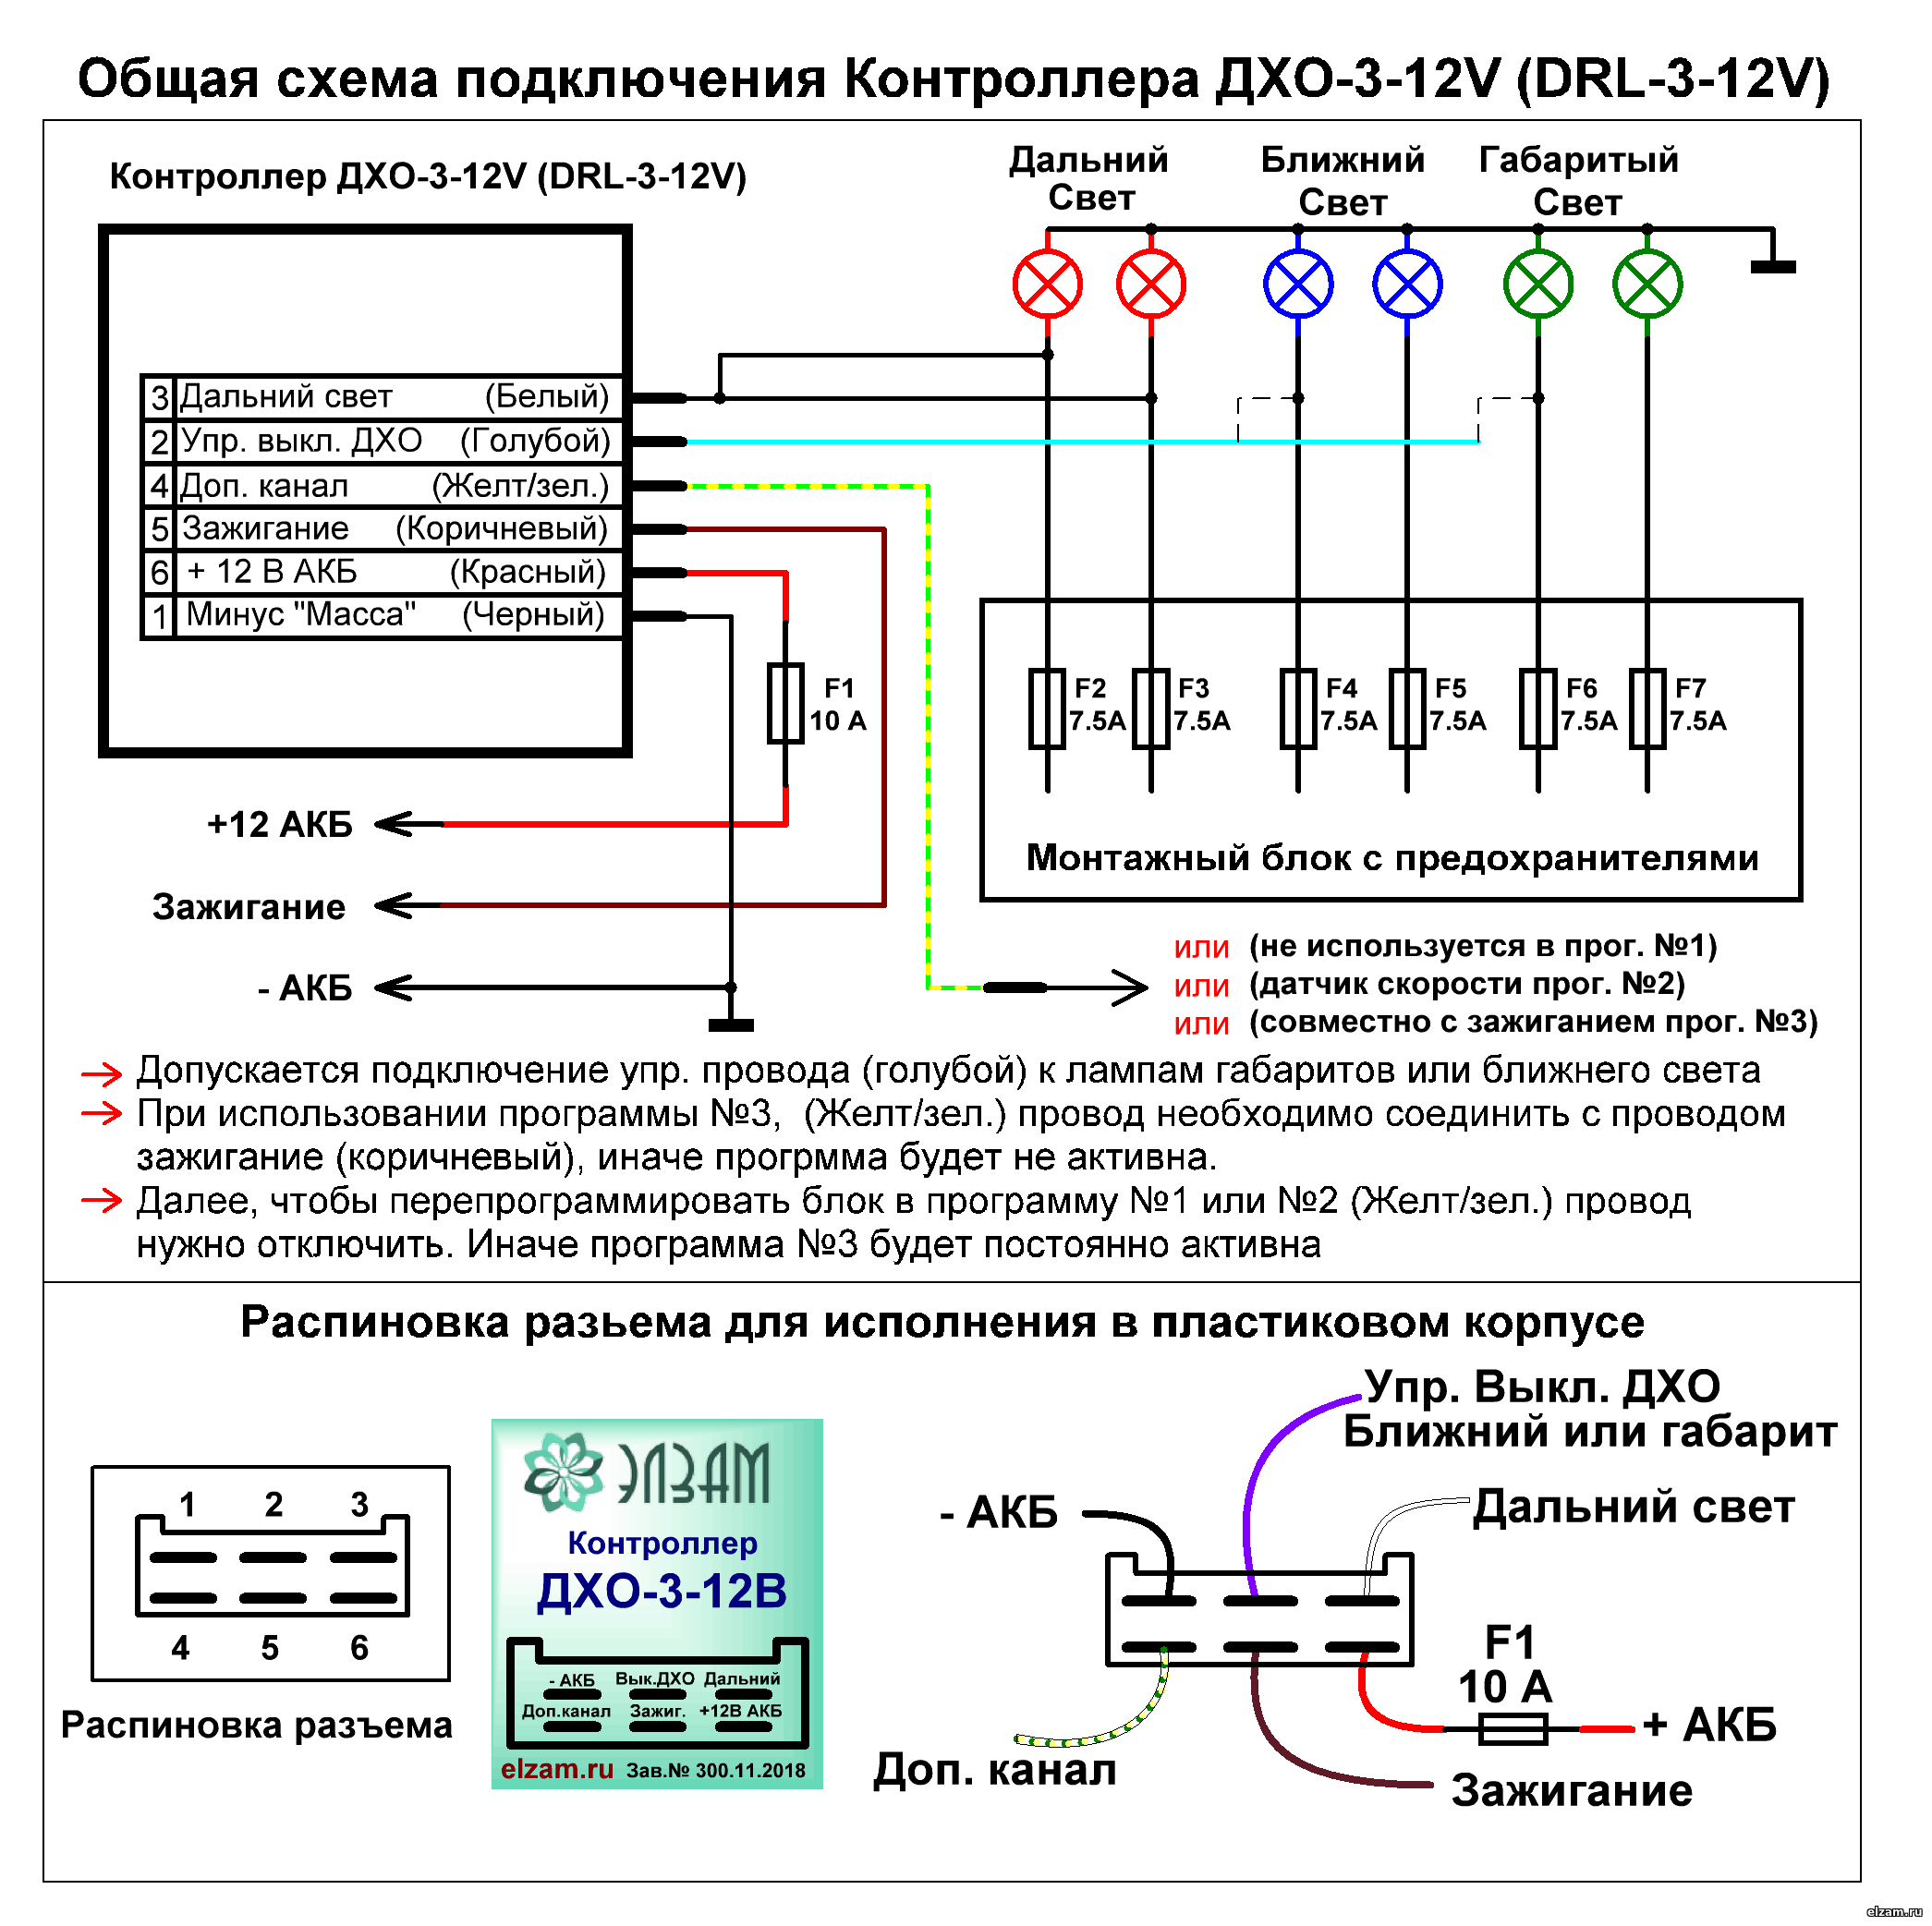 Общая схема подключения Контроллера ДХО-3 (DRL-3)